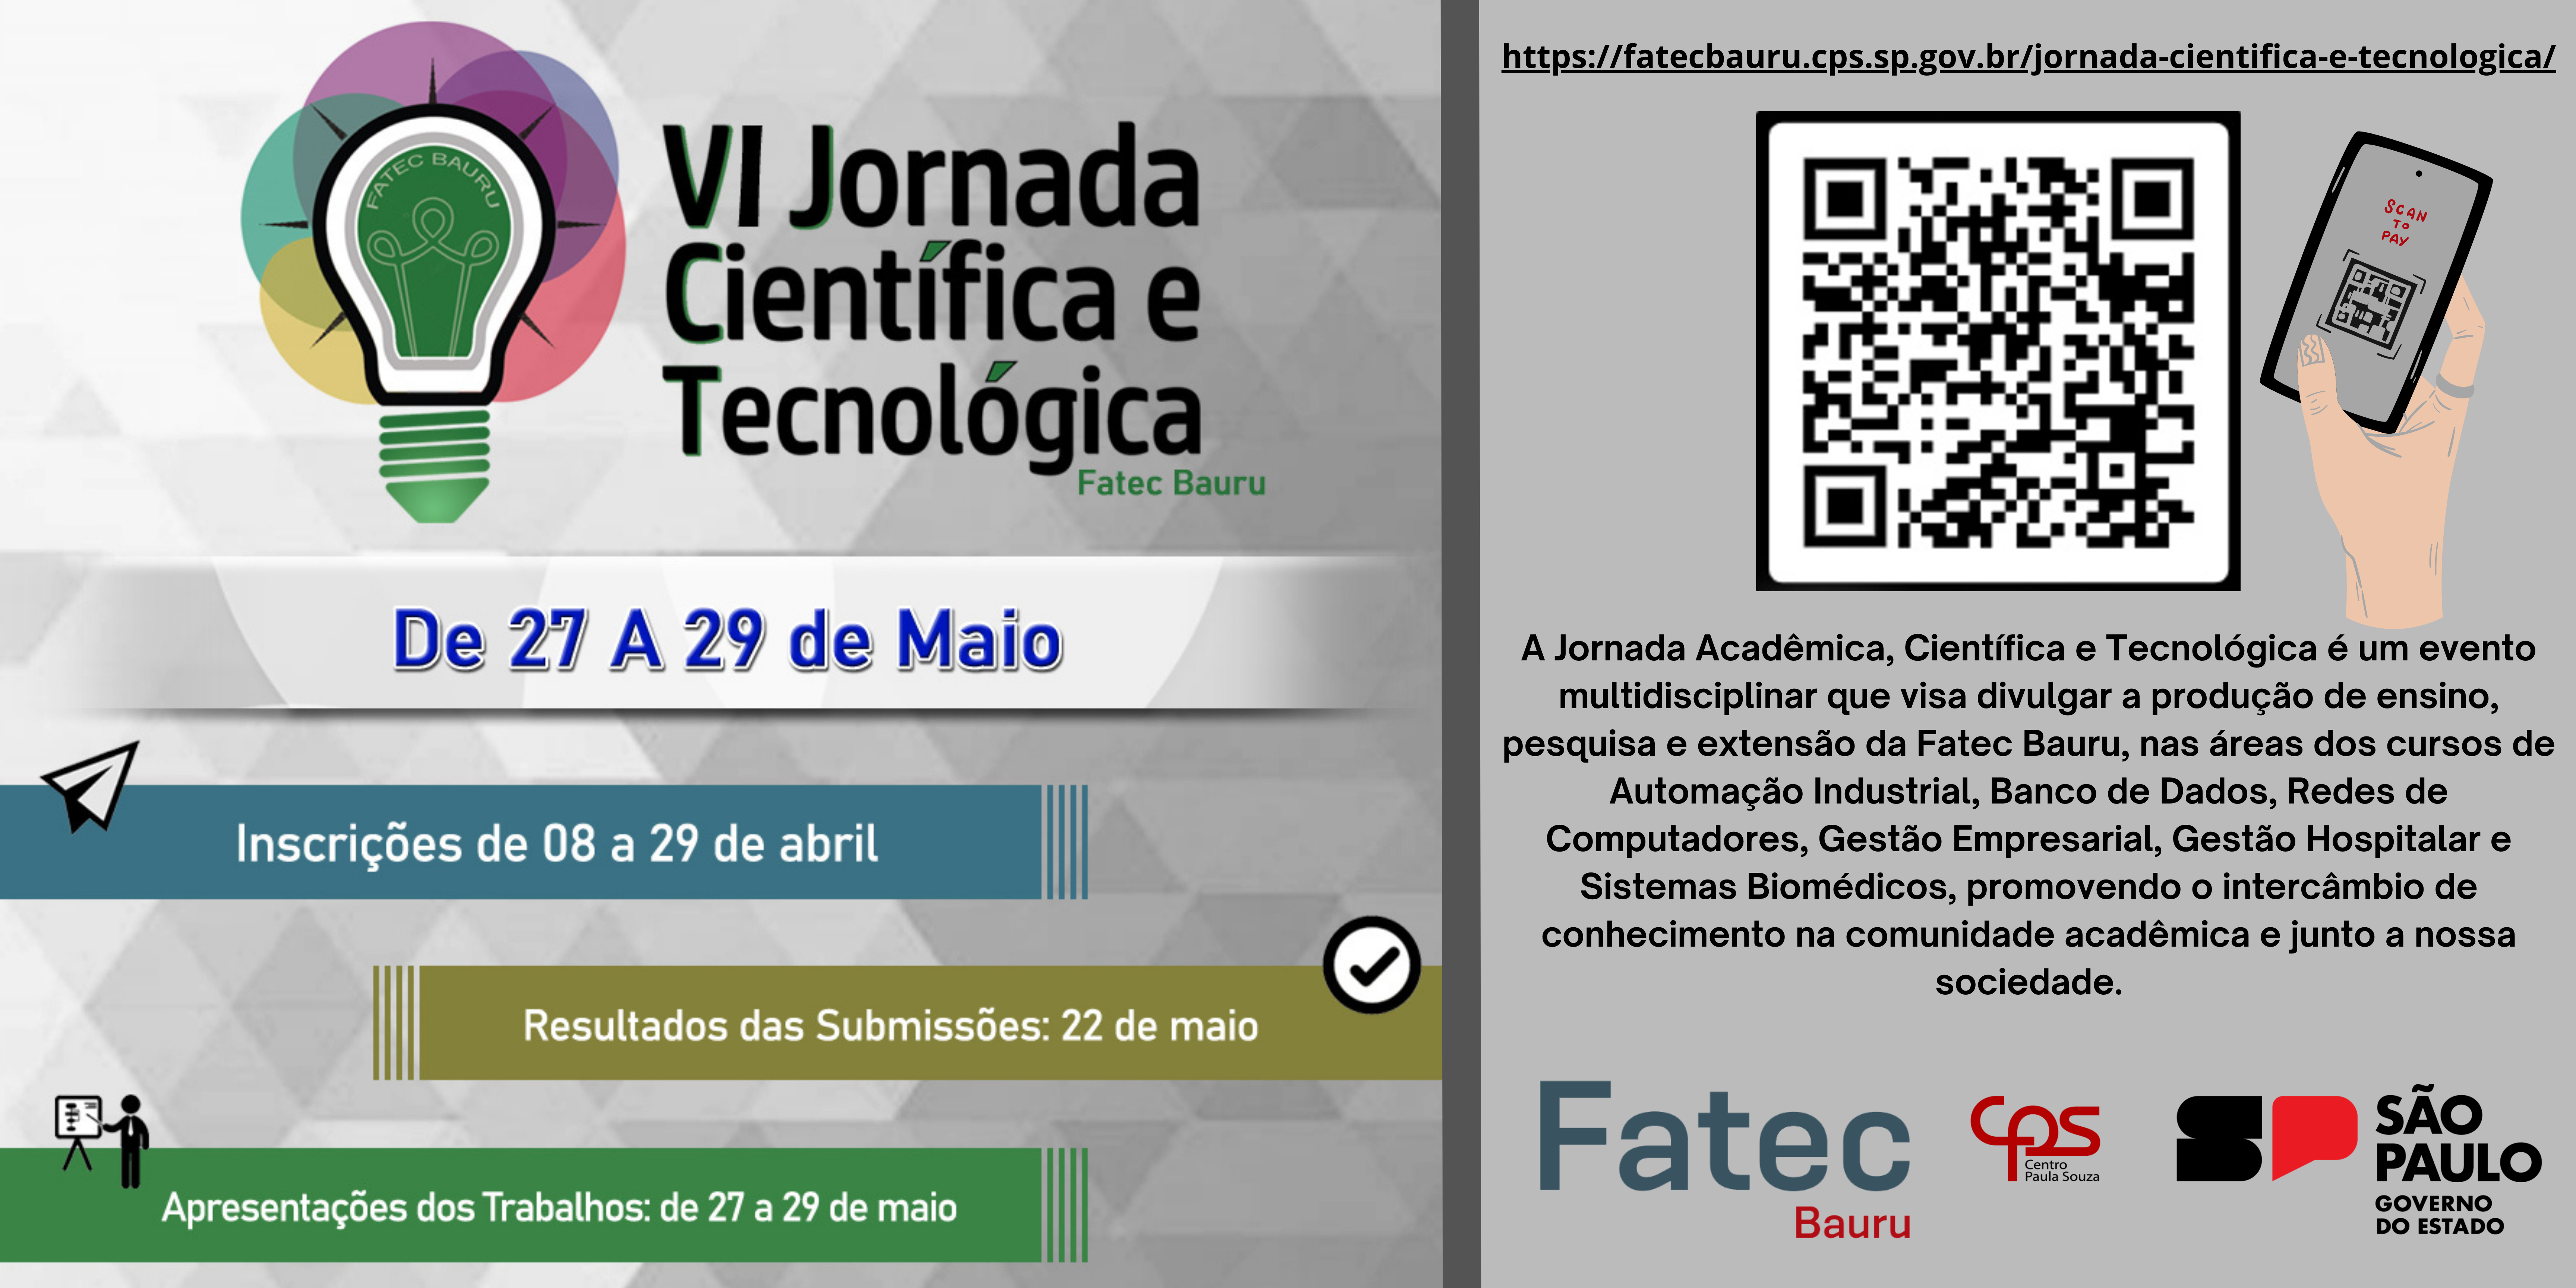 https://fatecbauru.cps.sp.gov.br/jornada-cientifica-e-tecnologica/